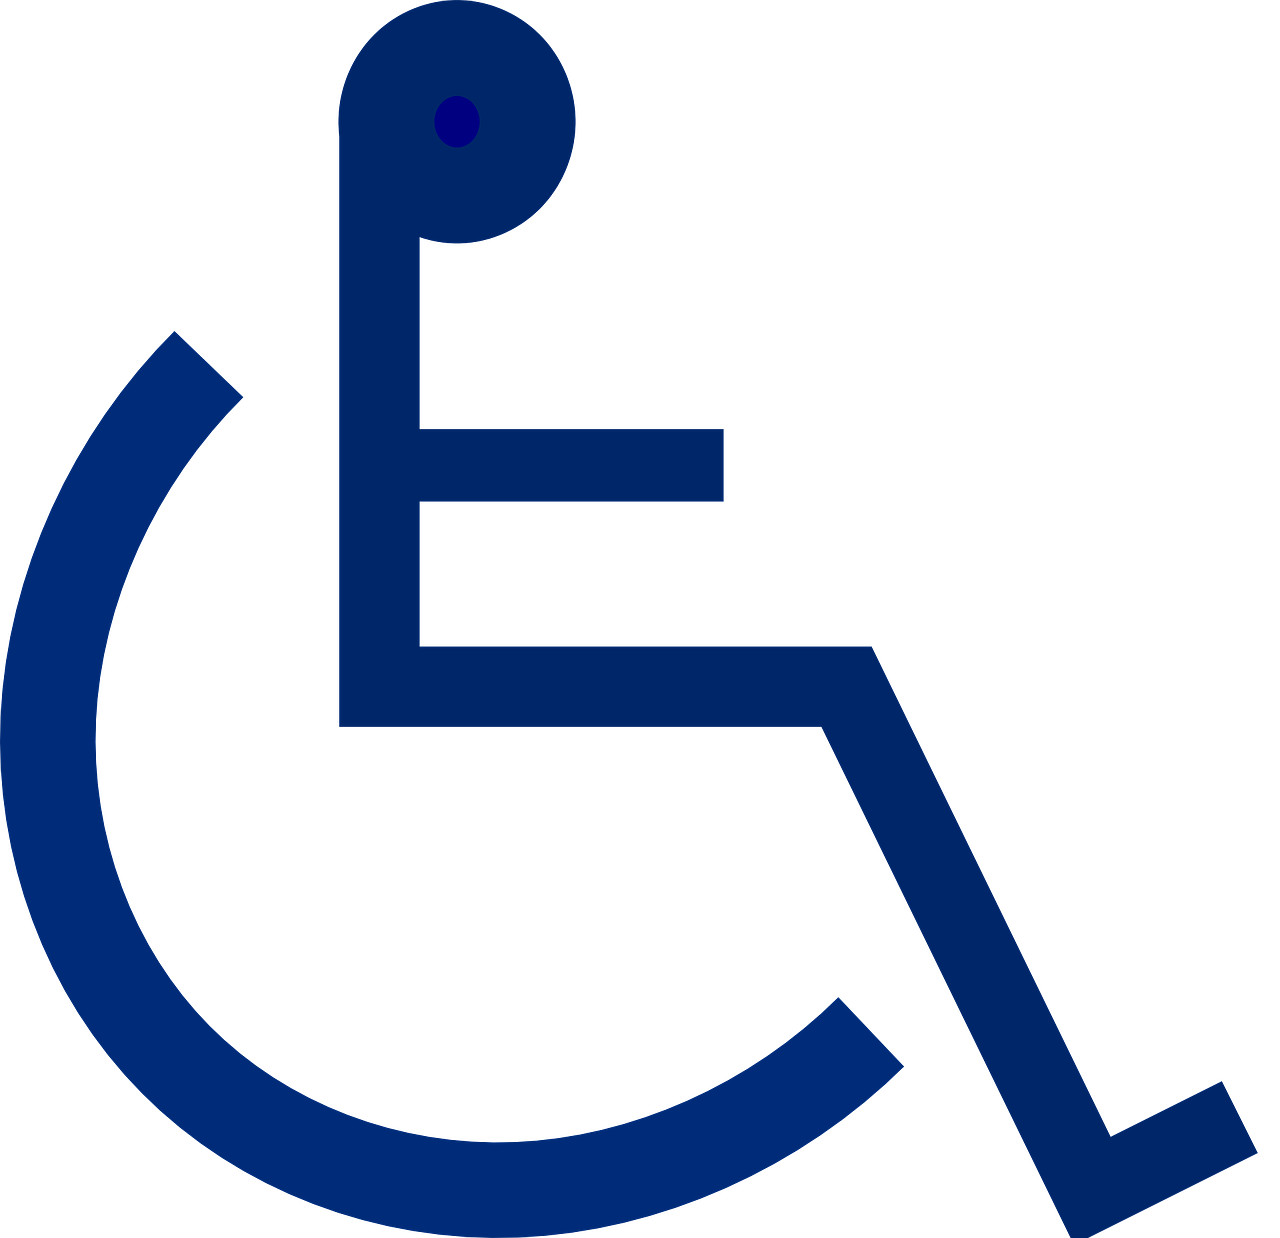 WerkWinkel de Liemers BV instelling gehandicaptenzorg verstandelijk gehandicapten ervaringen